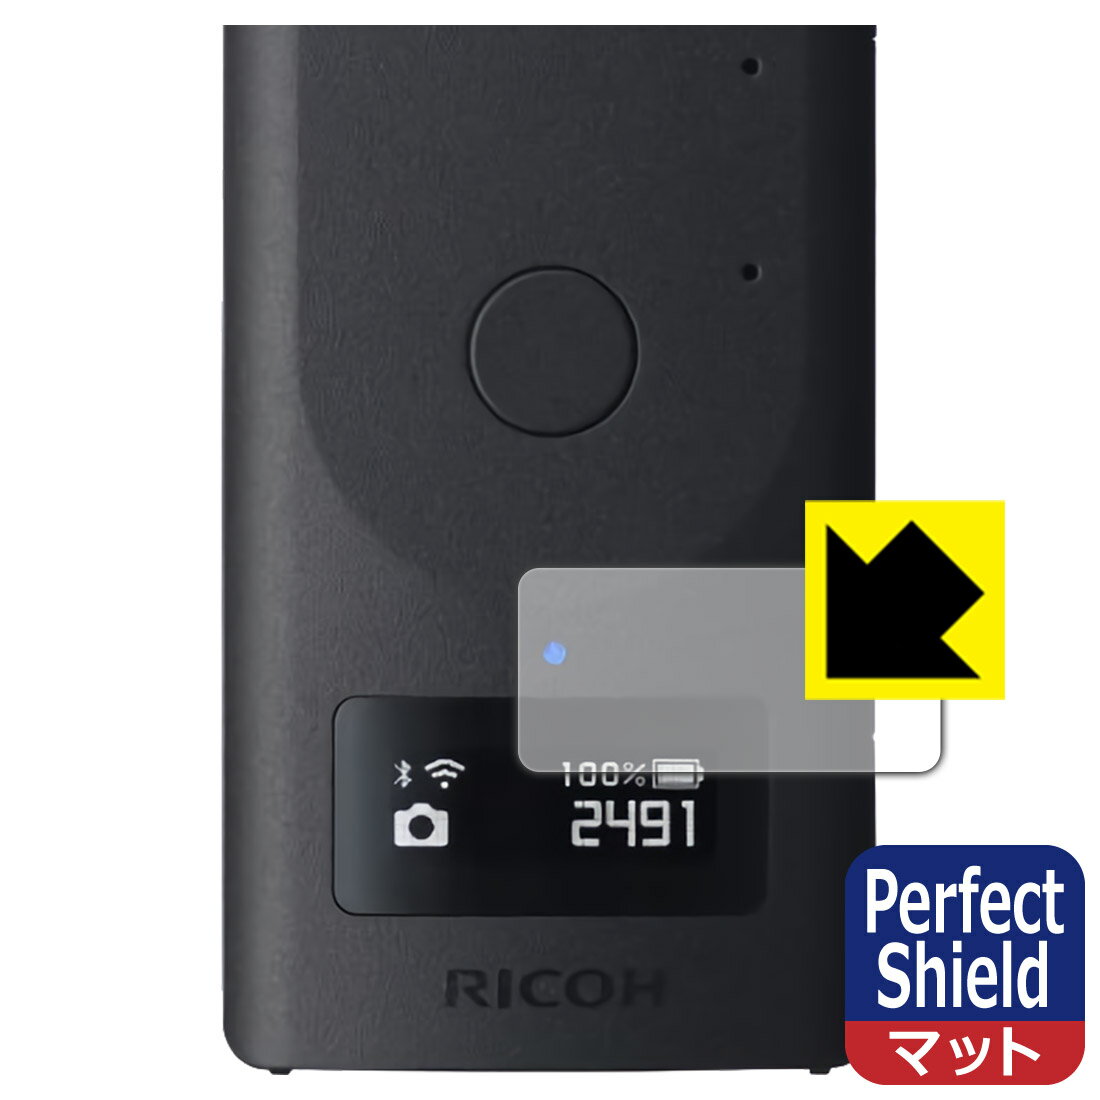 ●対応機種 : リコー RICOH THETA Z1 51GB / RICOH THETA Z1 (表示パネル部用)の保護フィルムです。●製品内容 : 表示パネル部用3枚●※保護フィルムの貼り付く範囲はイメージ画像のようになります。●「Perfect Shield」は画面の反射を抑え、指のすべりもなめらかな指紋や皮脂汚れがつきにくい『アンチグレアタイプ(非光沢)の保護フィルム』●安心の国産素材を使用。日本国内の自社工場で製造し出荷しています。【ポスト投函送料無料】商品は【ポスト投函発送 (追跡可能メール便)】で発送します。お急ぎ、配達日時を指定されたい方は以下のクーポンを同時購入ください。【お急ぎ便クーポン】　プラス110円(税込)で速達扱いでの発送。お届けはポストへの投函となります。【配達日時指定クーポン】　プラス550円(税込)で配達日時を指定し、宅配便で発送させていただきます。【お急ぎ便クーポン】はこちらをクリック【配達日時指定クーポン】はこちらをクリック 　 表面に微細な凹凸を作ることにより、外光を乱反射させギラツキを抑える「アンチグレア加工」がされております。 屋外での太陽光の映り込み、屋内でも蛍光灯などの映り込みが気になるシーンが多い方におすすめです。 また、指紋がついた場合でも目立ちにくいという特長があります。 指滑りはさらさらな使用感でストレスのない操作・入力が可能です。 ハードコート加工がされており、キズや擦れに強くなっています。簡単にキズがつかず長くご利用いただけます。 反射防止のアンチグレア加工で指紋が目立ちにくい上、表面は防汚コーティングがされており、皮脂や汚れがつきにくく、また、落ちやすくなっています。 接着面は気泡の入りにくい特殊な自己吸着タイプです。素材に柔軟性があり、貼り付け作業も簡単にできます。また、はがすときにガラス製フィルムのように割れてしまうことはありません。 貼り直しが何度でもできるので、正しい位置へ貼り付けられるまでやり直すことができます。 最高級グレードの国産素材を日本国内の弊社工場で加工している完全な Made in Japan です。安心の品質をお届けします。 使用上の注意 ●本製品は機器の画面をキズなどから保護するフィルムです。他の目的にはご使用にならないでください。 ●本製品は液晶保護および機器本体を完全に保護することを保証するものではありません。機器の破損、損傷、故障、その他損害につきましては一切の責任を負いかねます。 ●製品の性質上、画面操作の反応が変化したり、表示等が変化して見える場合がございます。 ●貼り付け作業時の失敗(位置ズレ、汚れ、ゆがみ、折れ、気泡など)および取り外し作業時の破損、損傷などについては、一切の責任を負いかねます。 ●水に濡れた状態でのご使用は吸着力の低下などにより、保護フィルムがはがれてしまう場合がございます。防水対応の機器でご使用の場合はご注意ください。 ●アルコール類やその他薬剤を本製品に付着させないでください。表面のコーティングや吸着面が変質するおそれがあります。 ●品質向上のため、仕様などを予告なく変更する場合がございますので、予めご了承ください。